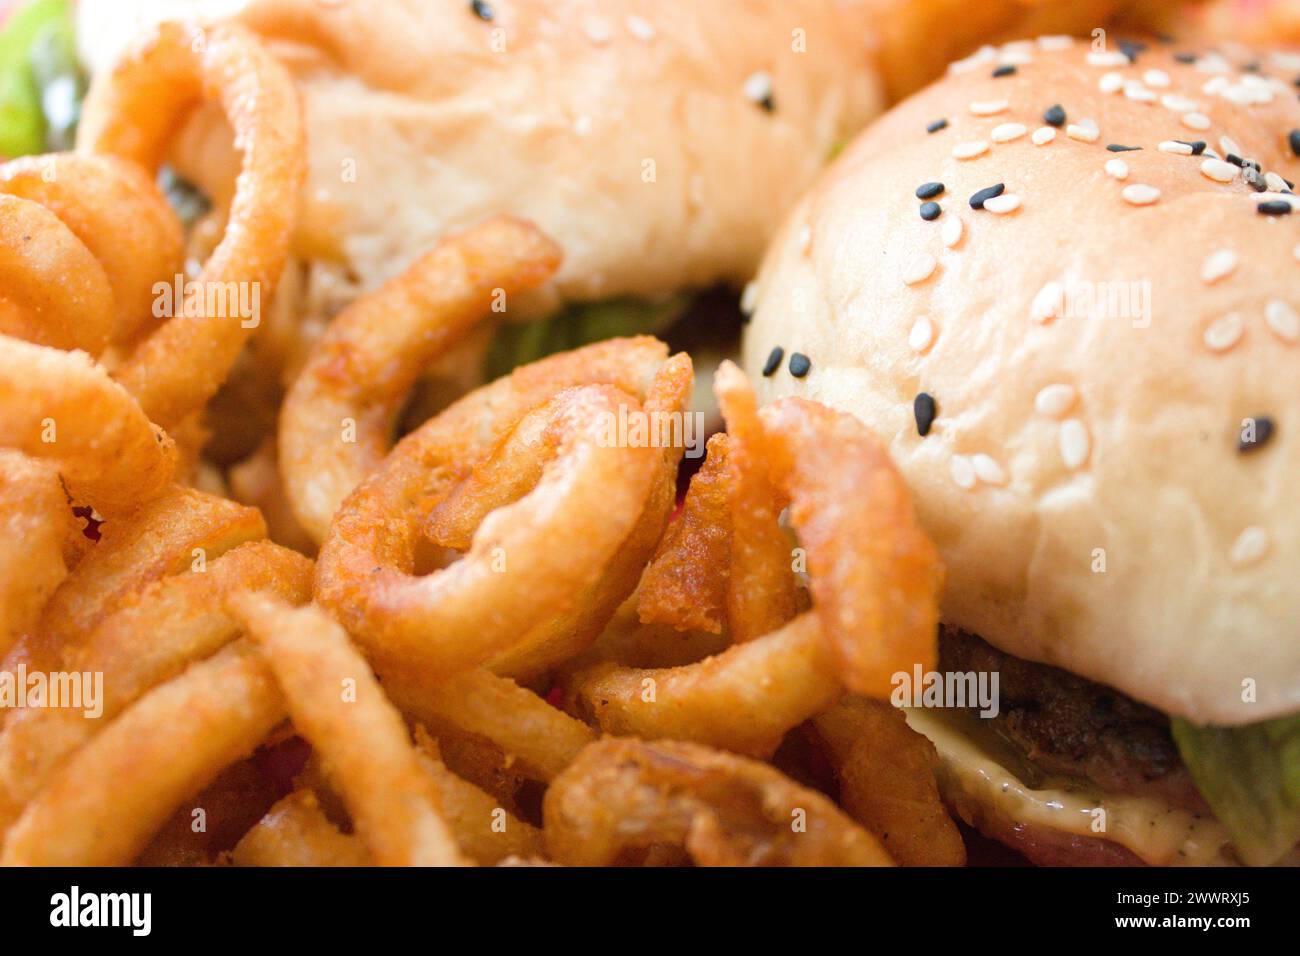 Eine Nahaufnahme eines Hamburger, Zwiebelringe und Salat Stockfoto